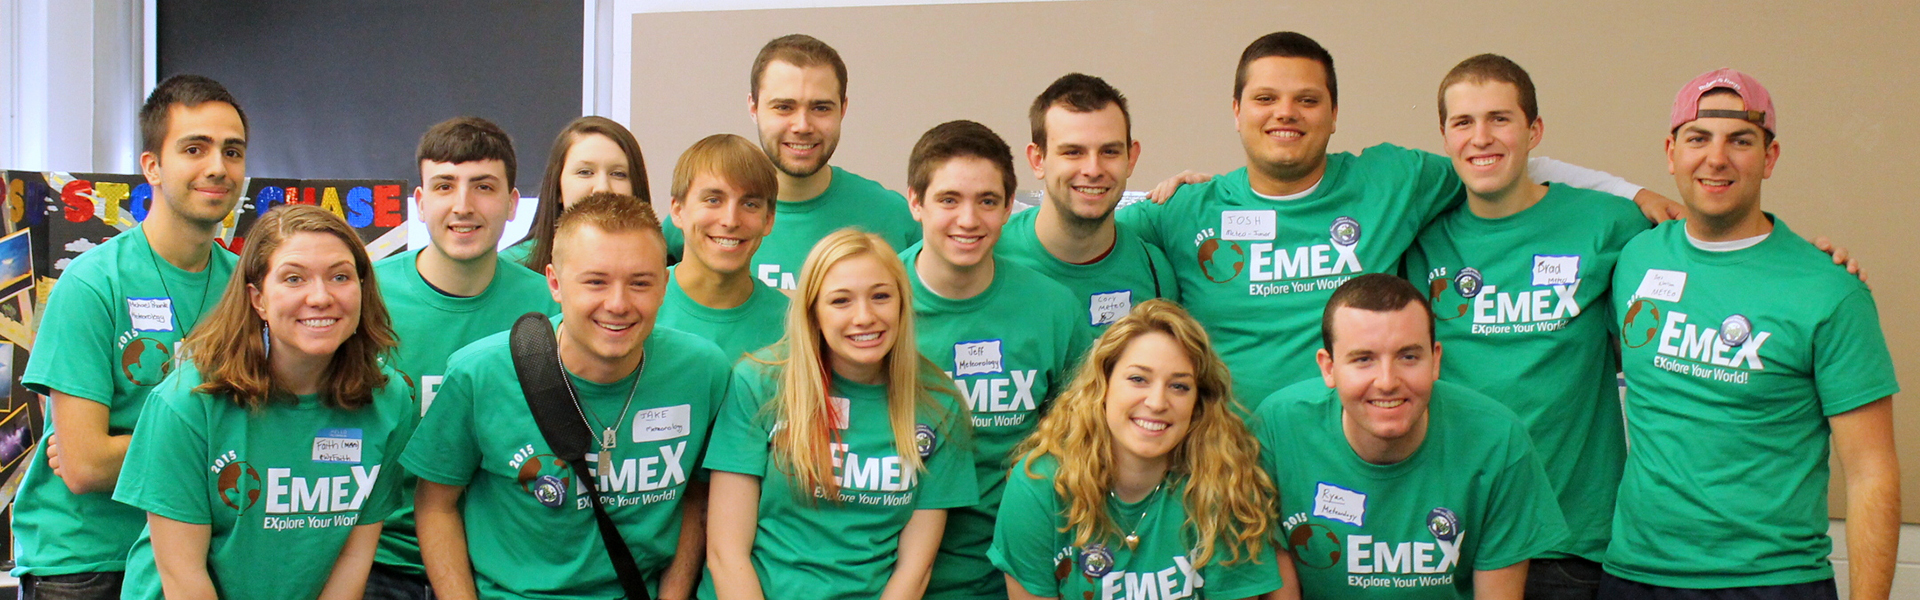 EMEX students